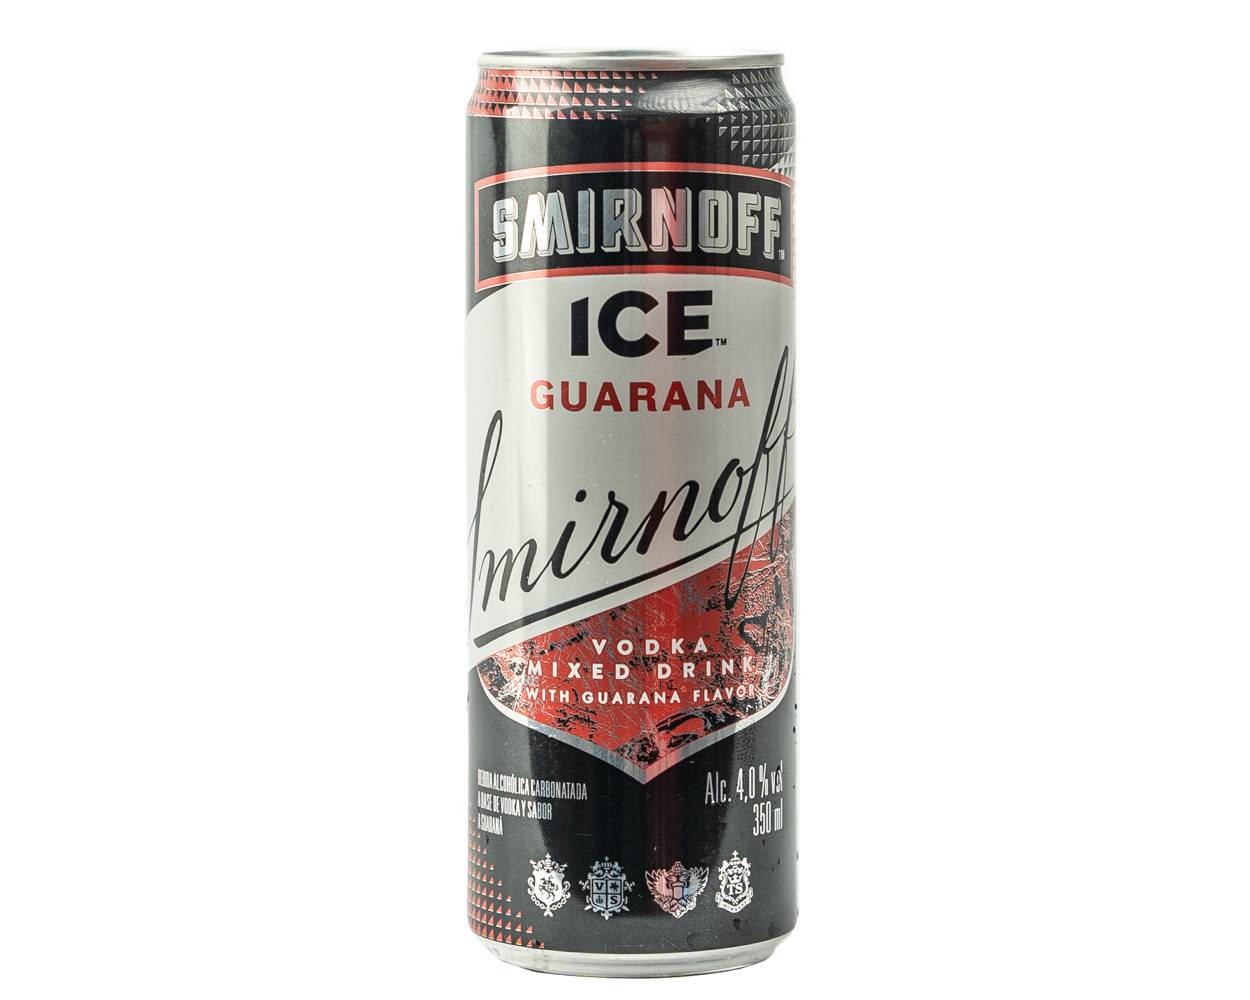 Smirnoff bebida ice guaraná (350 ml)